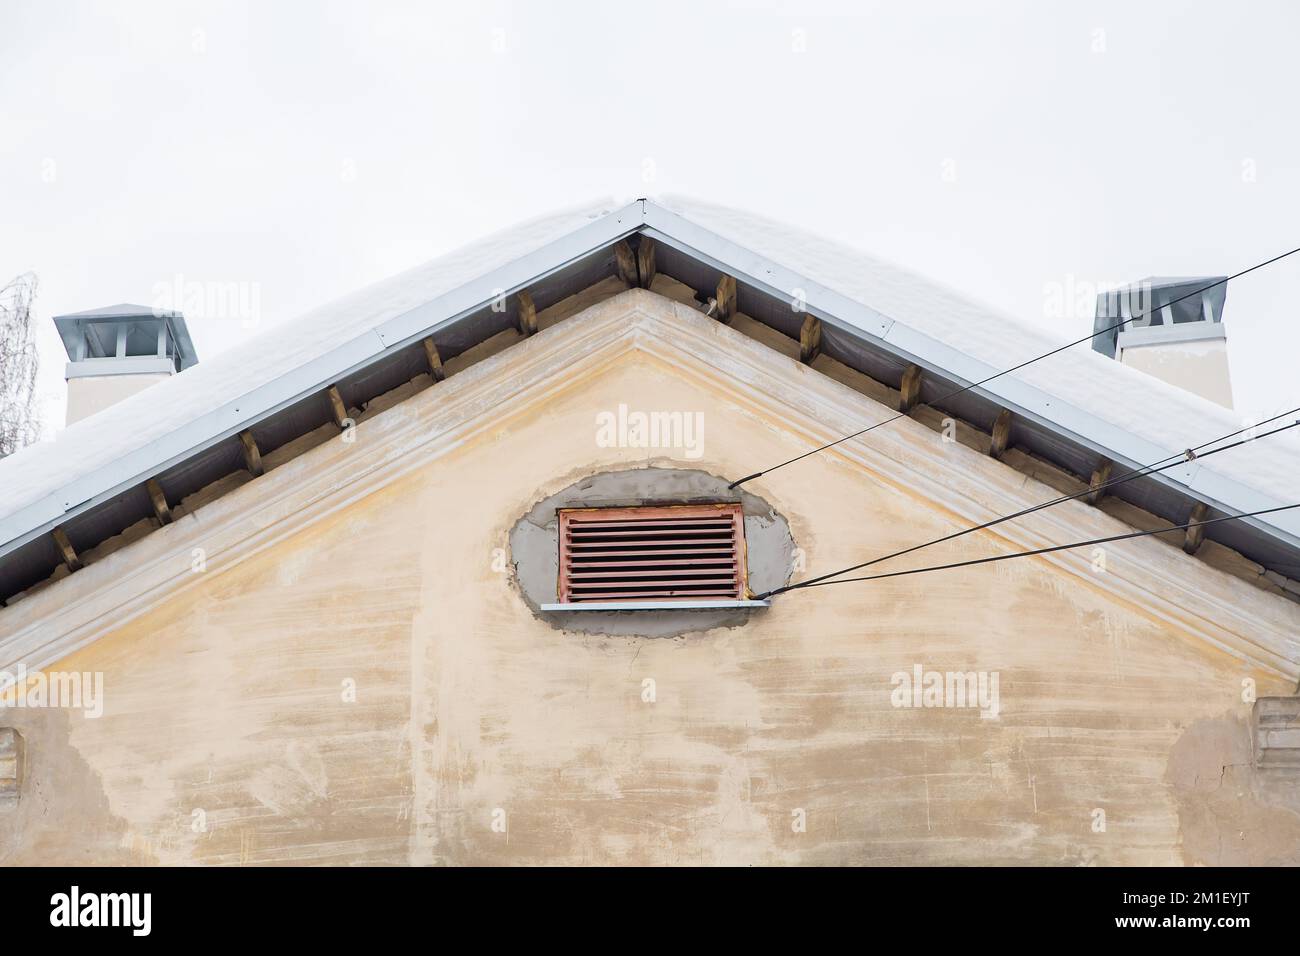 Deux tuyaux d'échappement de fumée, rectangulaires, sur le toit d'une ancienne maison. Le toit du bâtiment est recouvert de neige blanche contre le ciel gris. Nuageux, froid jour d'hiver, lumière douce. Banque D'Images